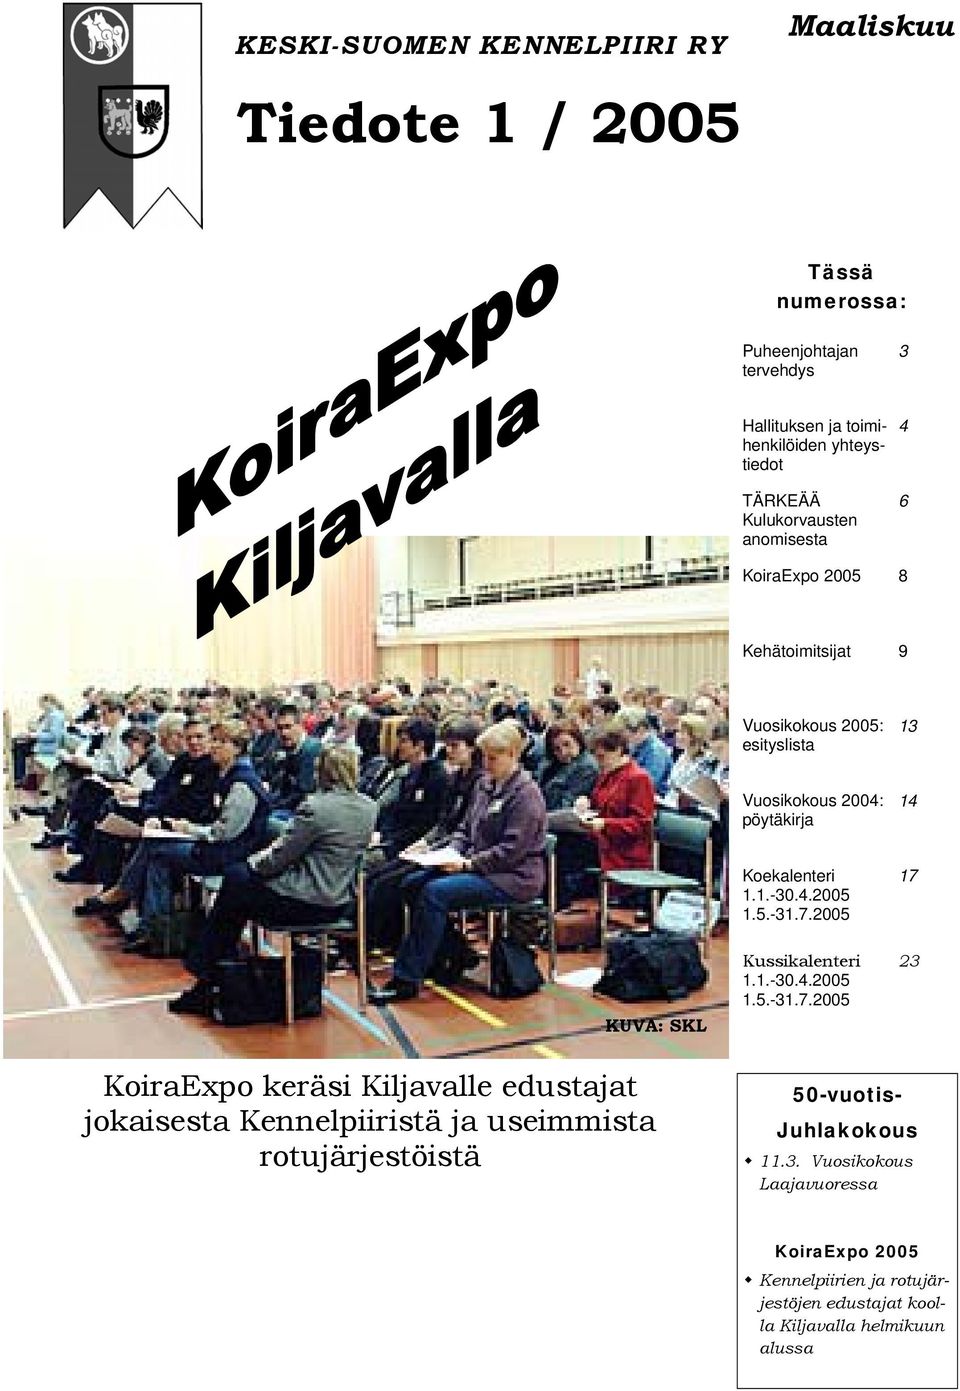 2005 17 KUVA: SKL Kussikalenteri 1.1.-30.4.2005 1.5.-31.7.2005 23 KoiraExpo keräsi Kiljavalle edustajat jokaisesta Kennelpiiristä ja useimmista rotujärjestöistä 50-vuotis- Juhlakokous 11.